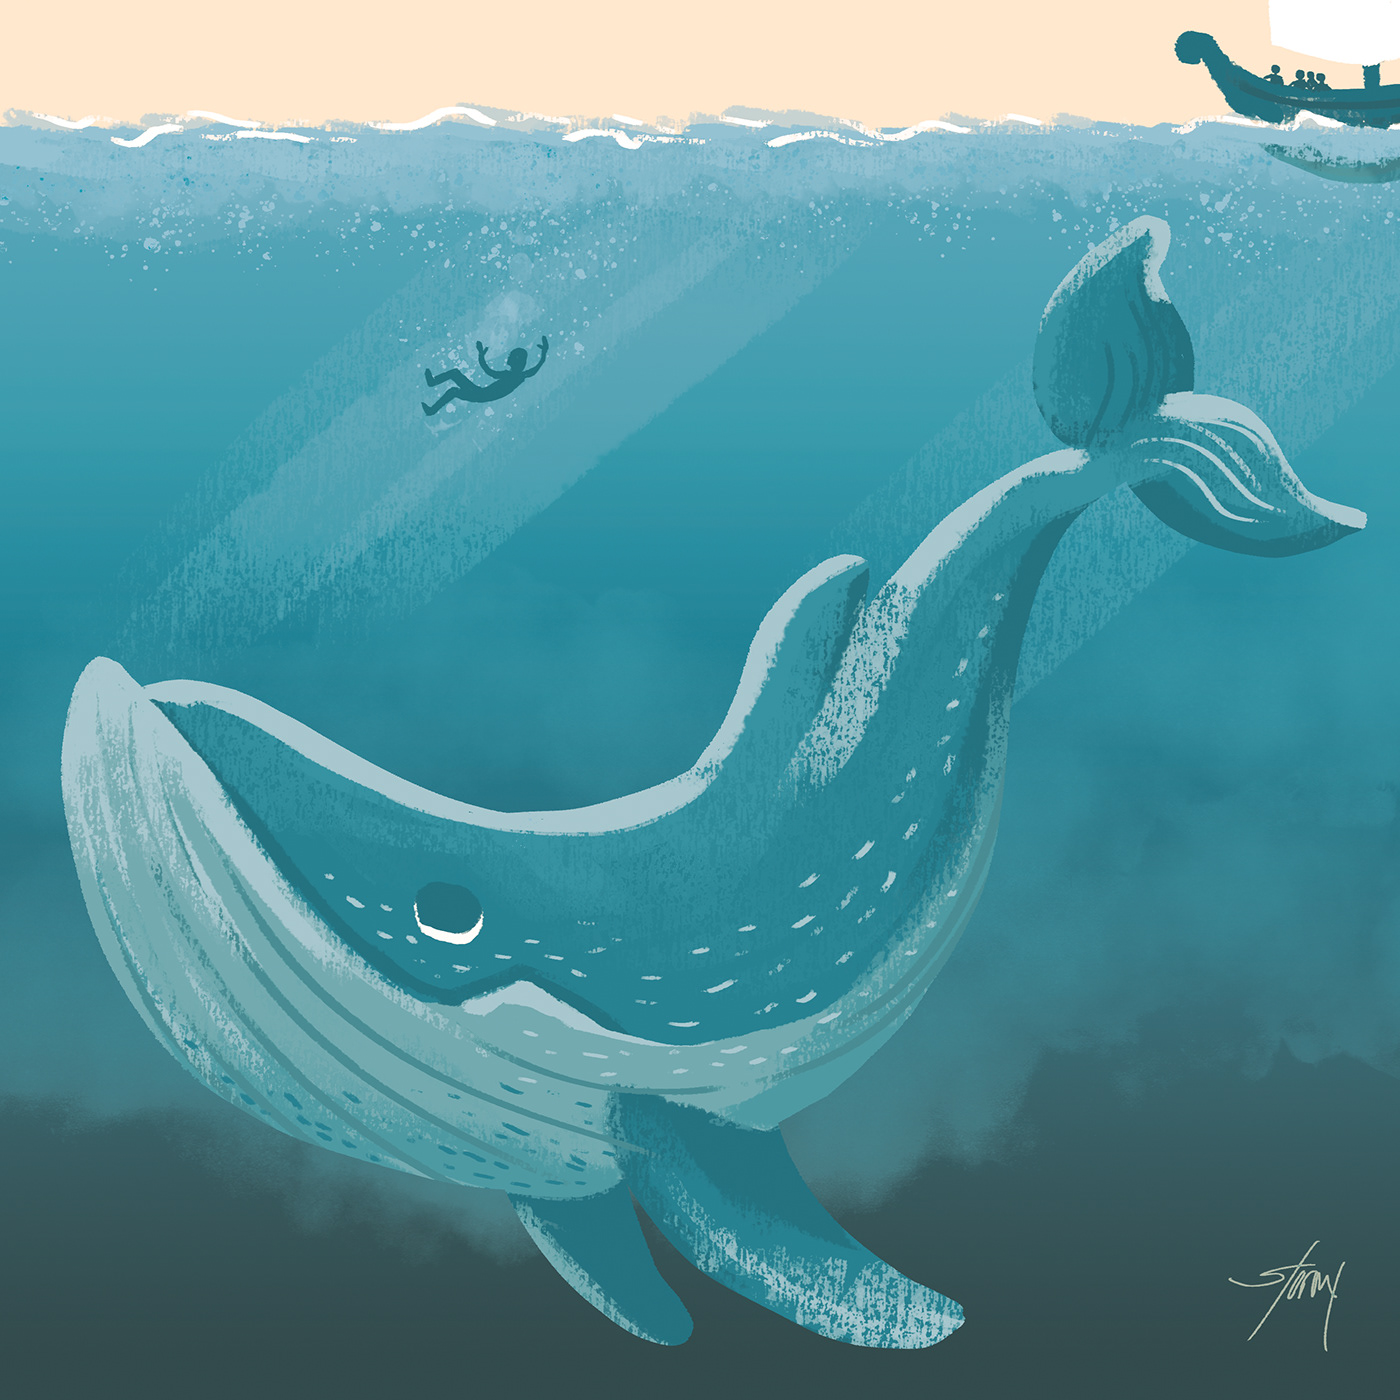 inktober bible Jonah Whale ILLUSTRATION  Ocean story religion Christian Digital Art 